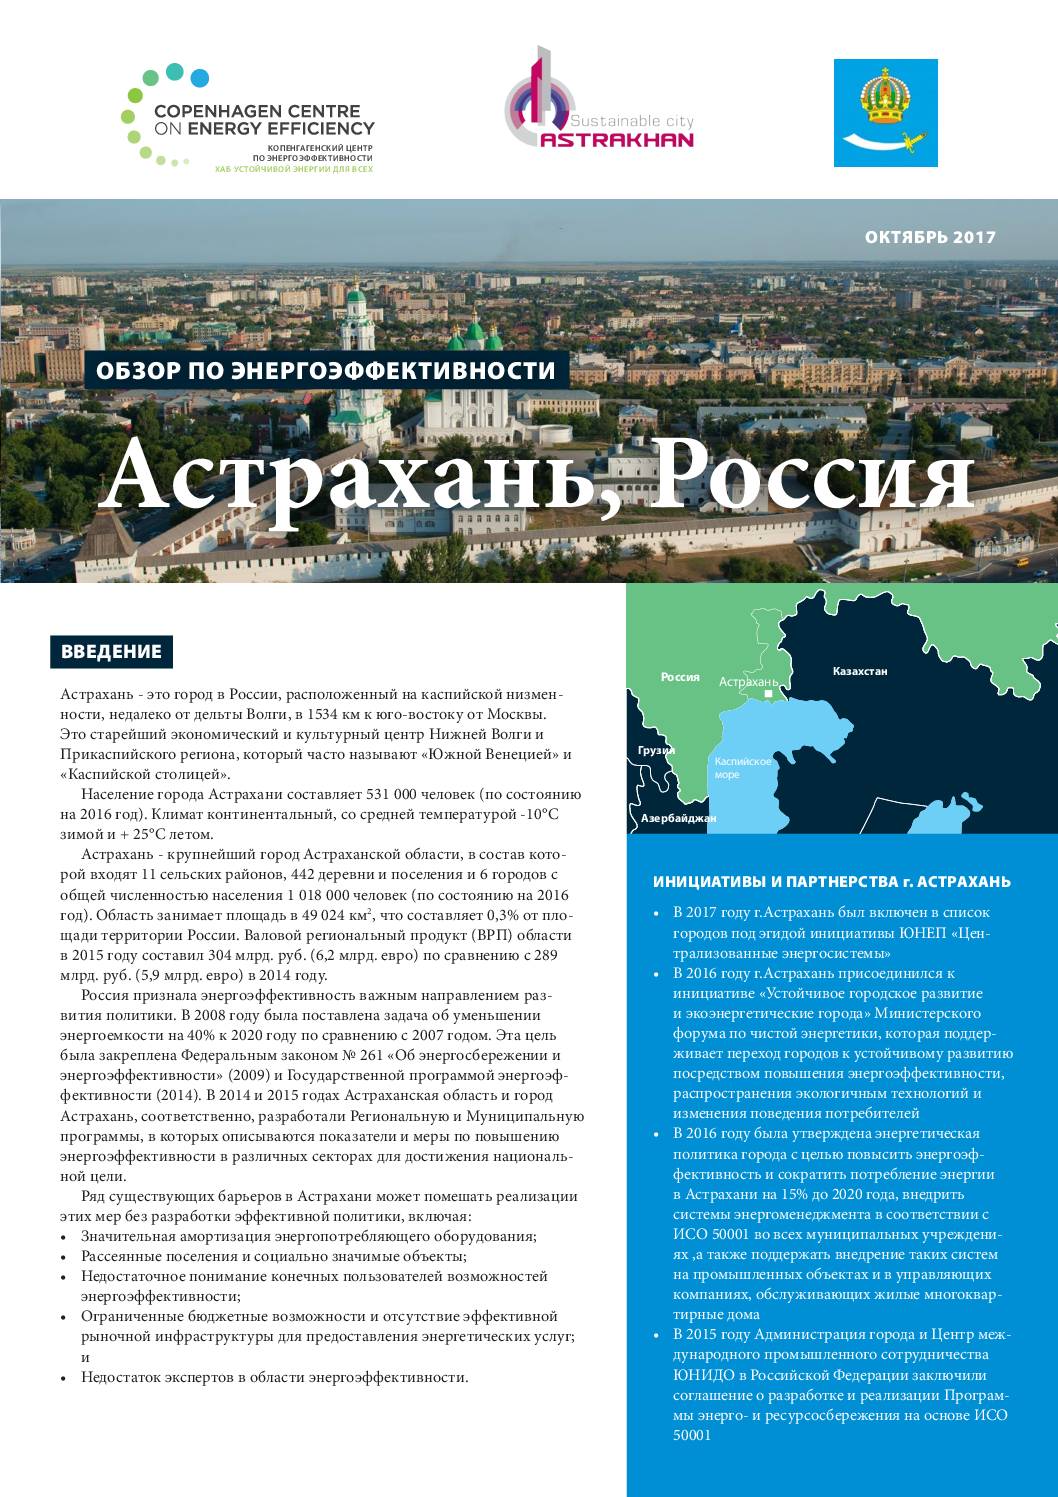 Обзор по энергоэффективности, Астрахань-Россия